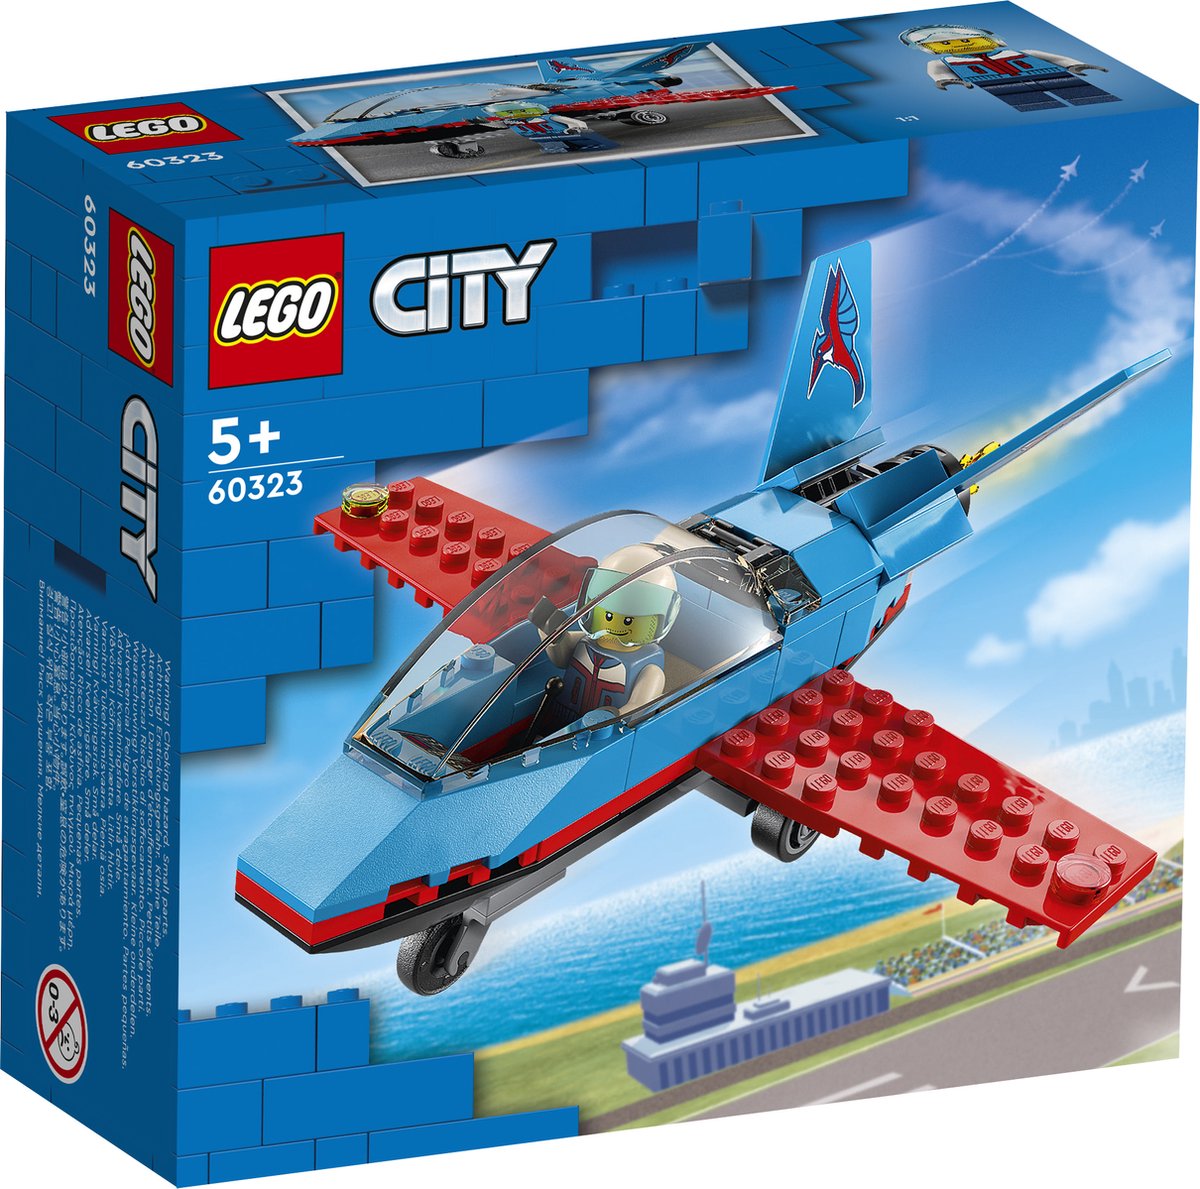   City Stuntvliegtuig - 60323